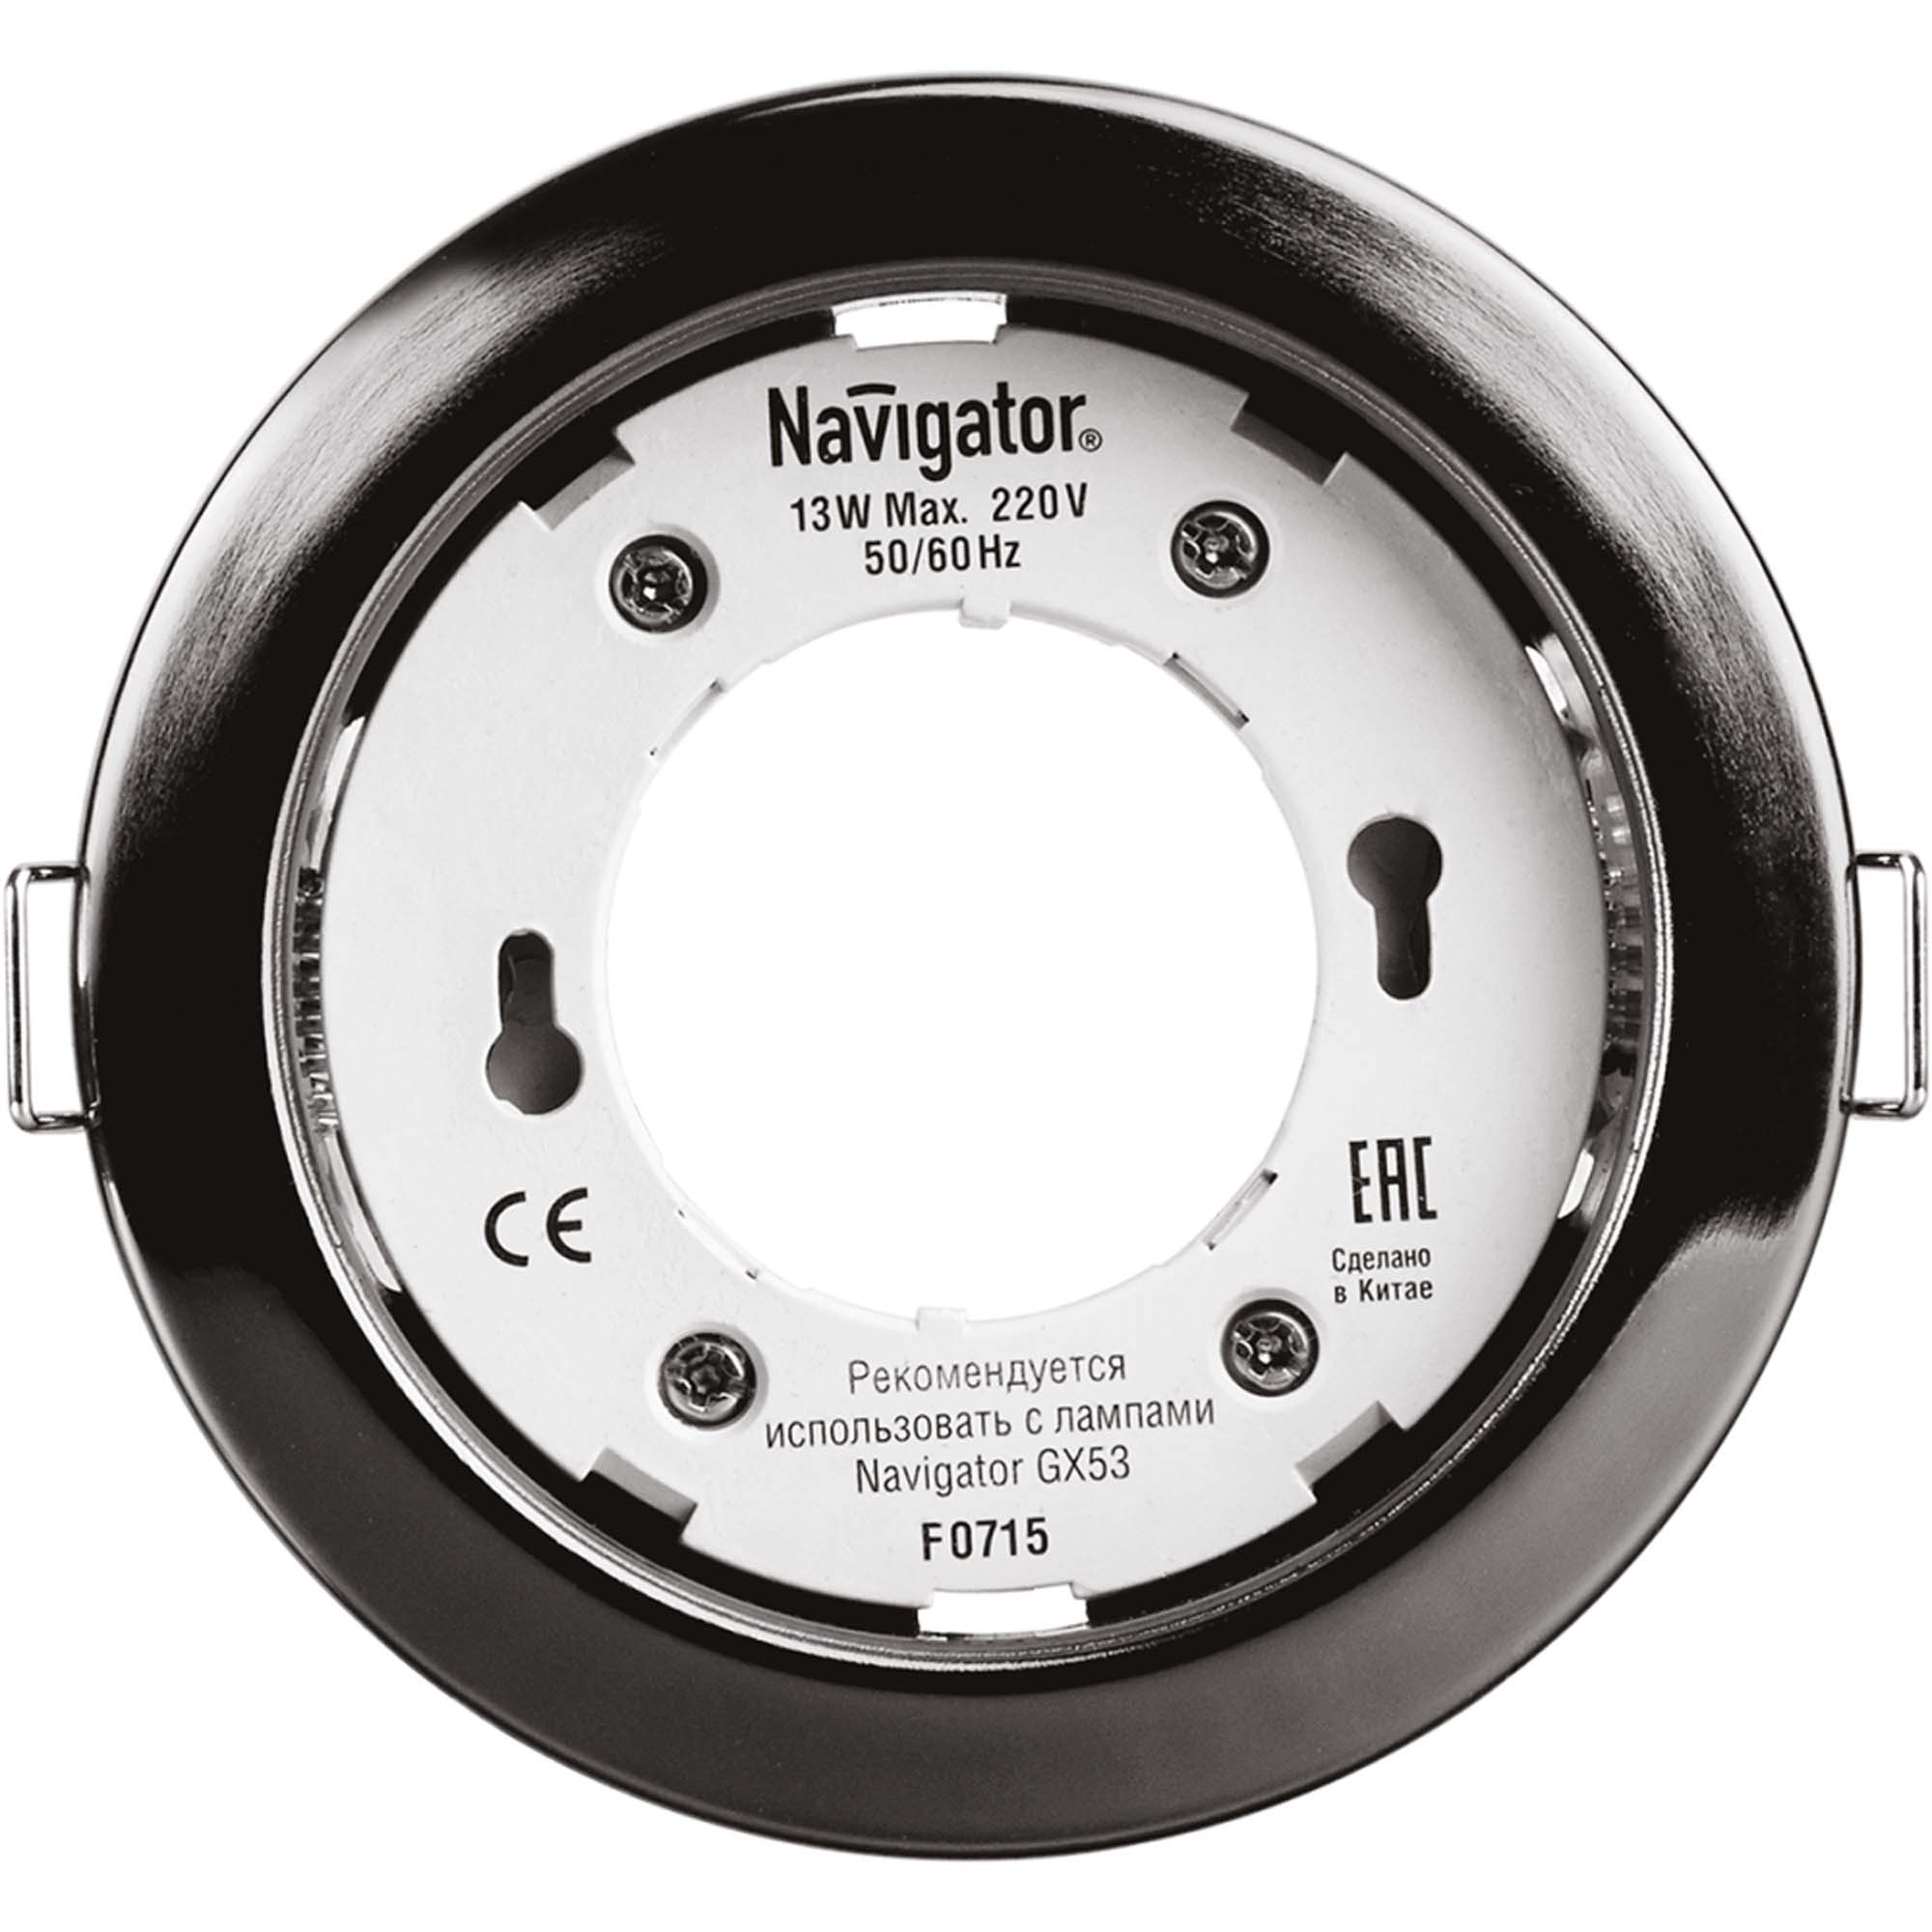 Светильник встраиваемый Navigator gx53-черный хром светильник встраиваемый navigator gx53 сатин хром